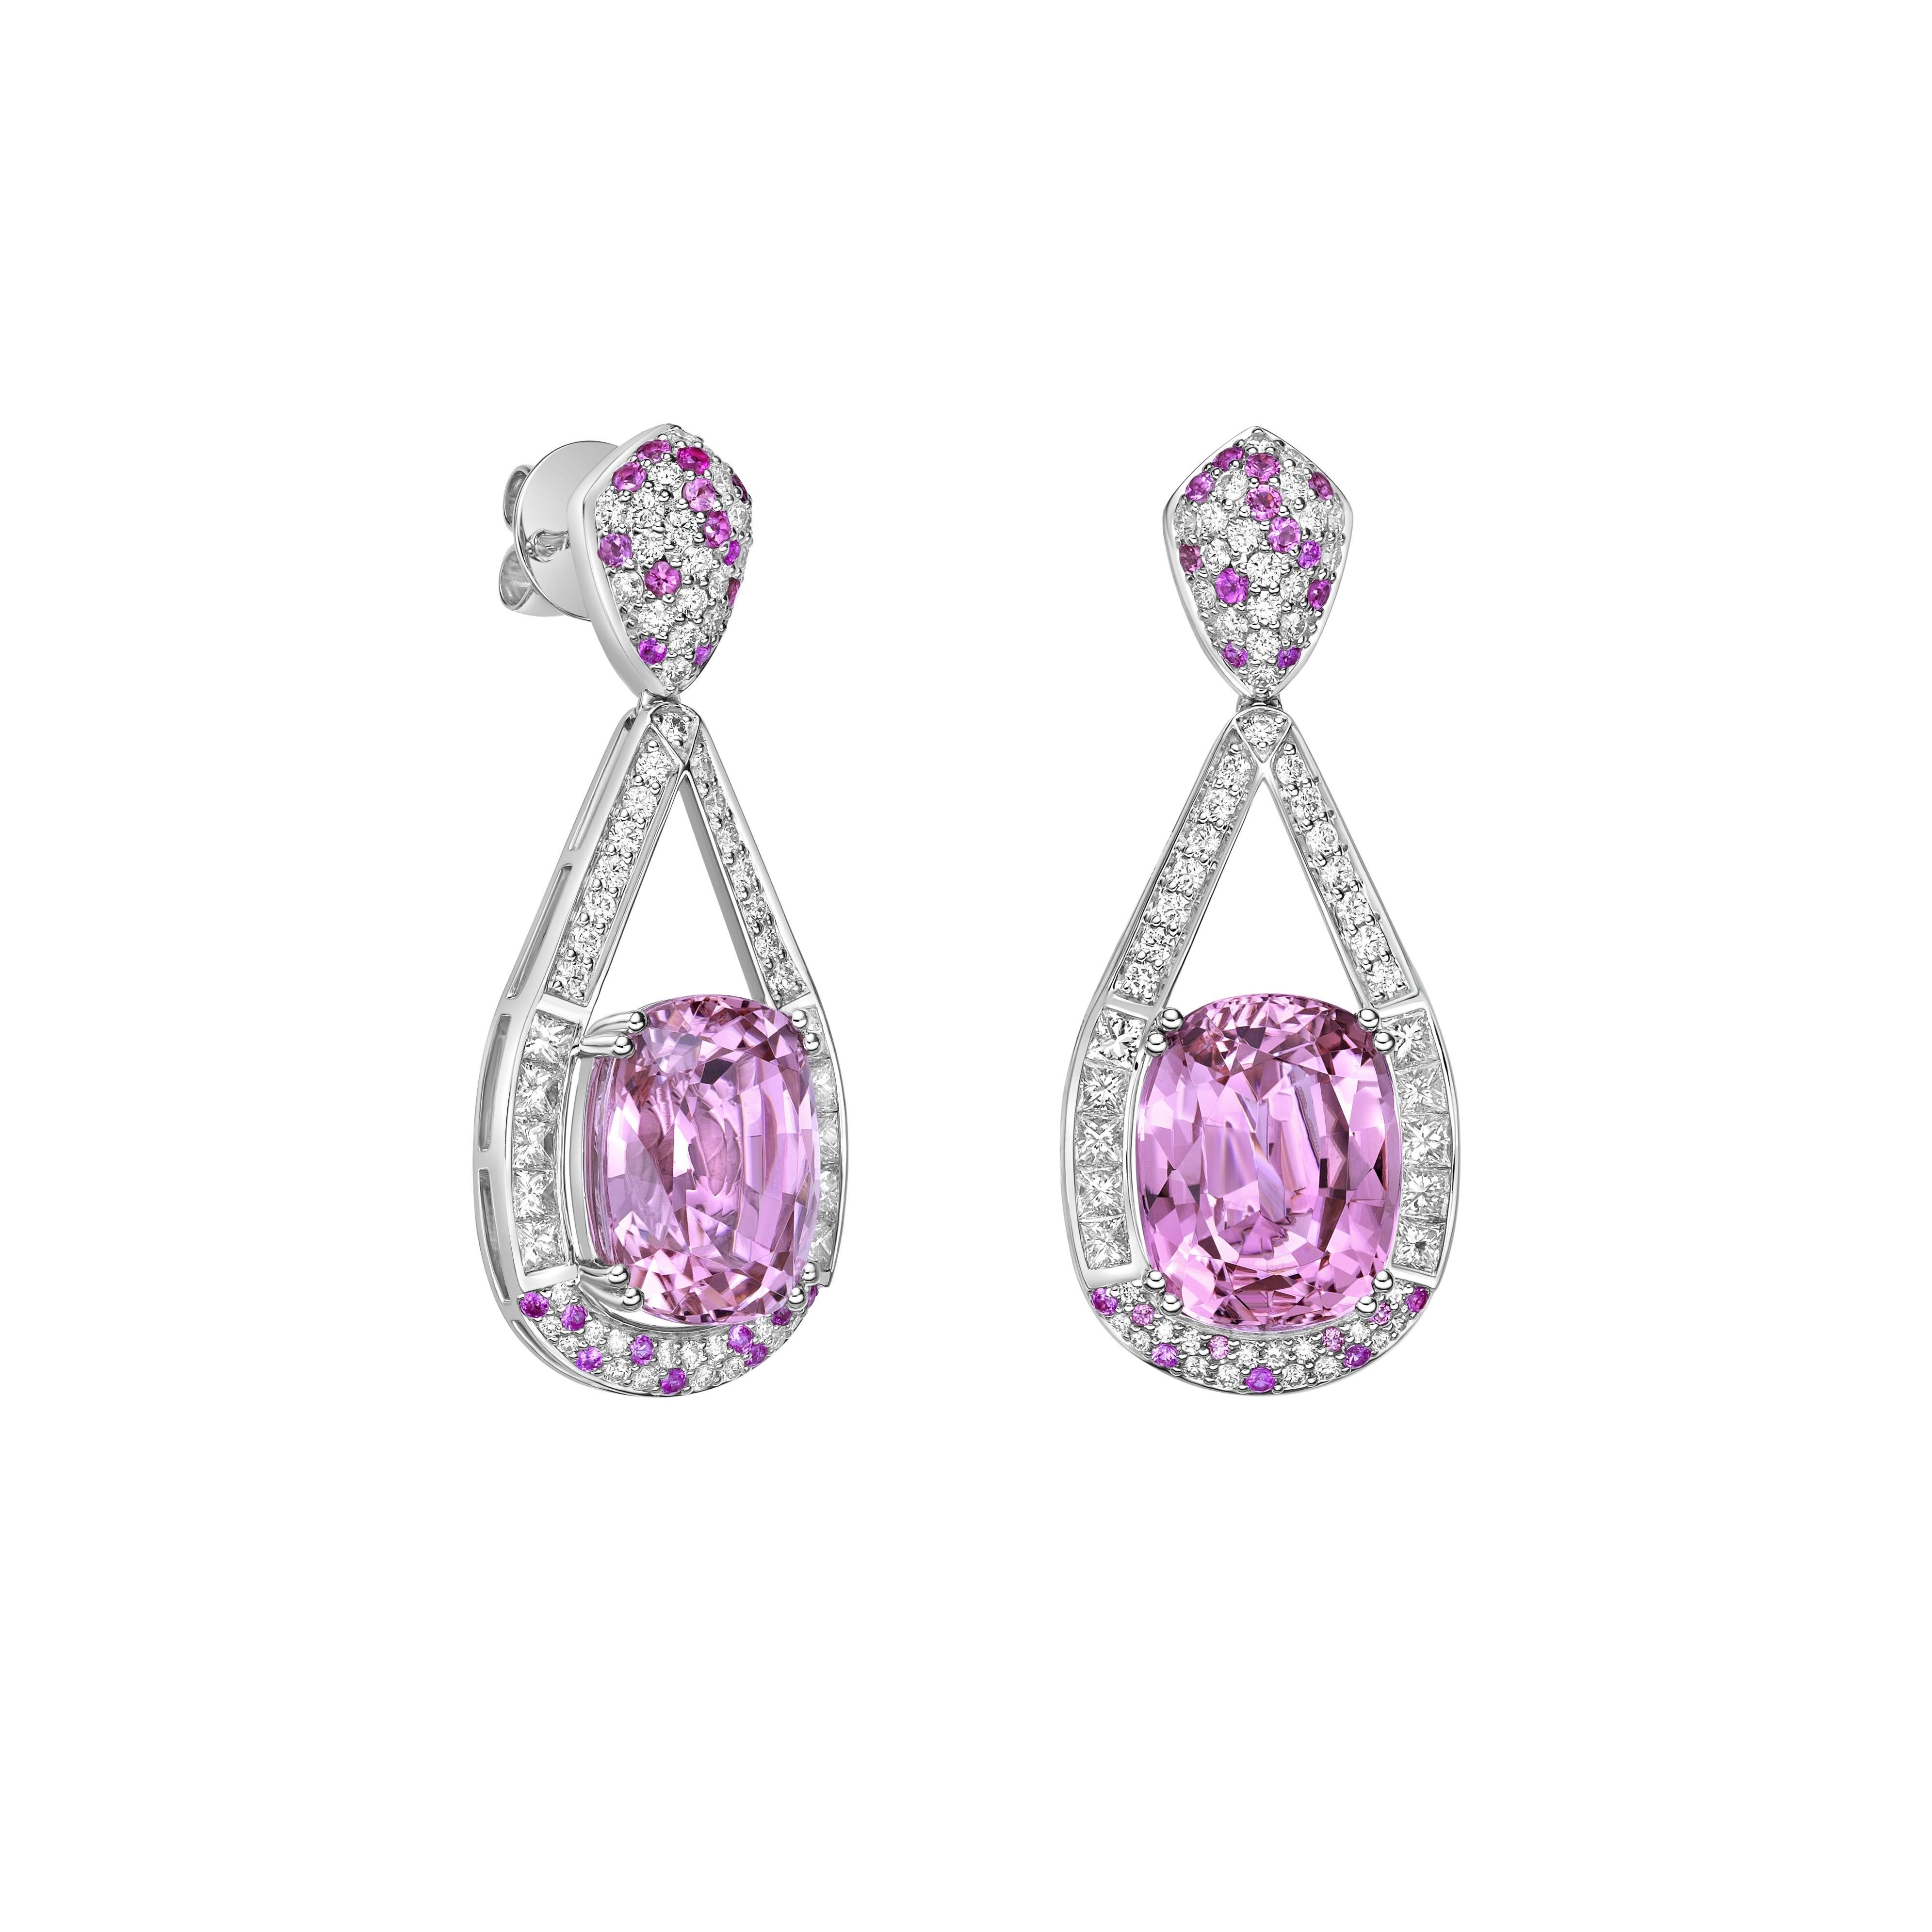 Diese Kollektion bietet eine Reihe von rosafarbenen Turmalinen mit einem rosa Farbton, der so cool ist, wie er nur sein kann! Die mit Diamanten besetzten Ohrringe sind aus Weißgold gefertigt und wirken klassisch und elegant.

Rosa